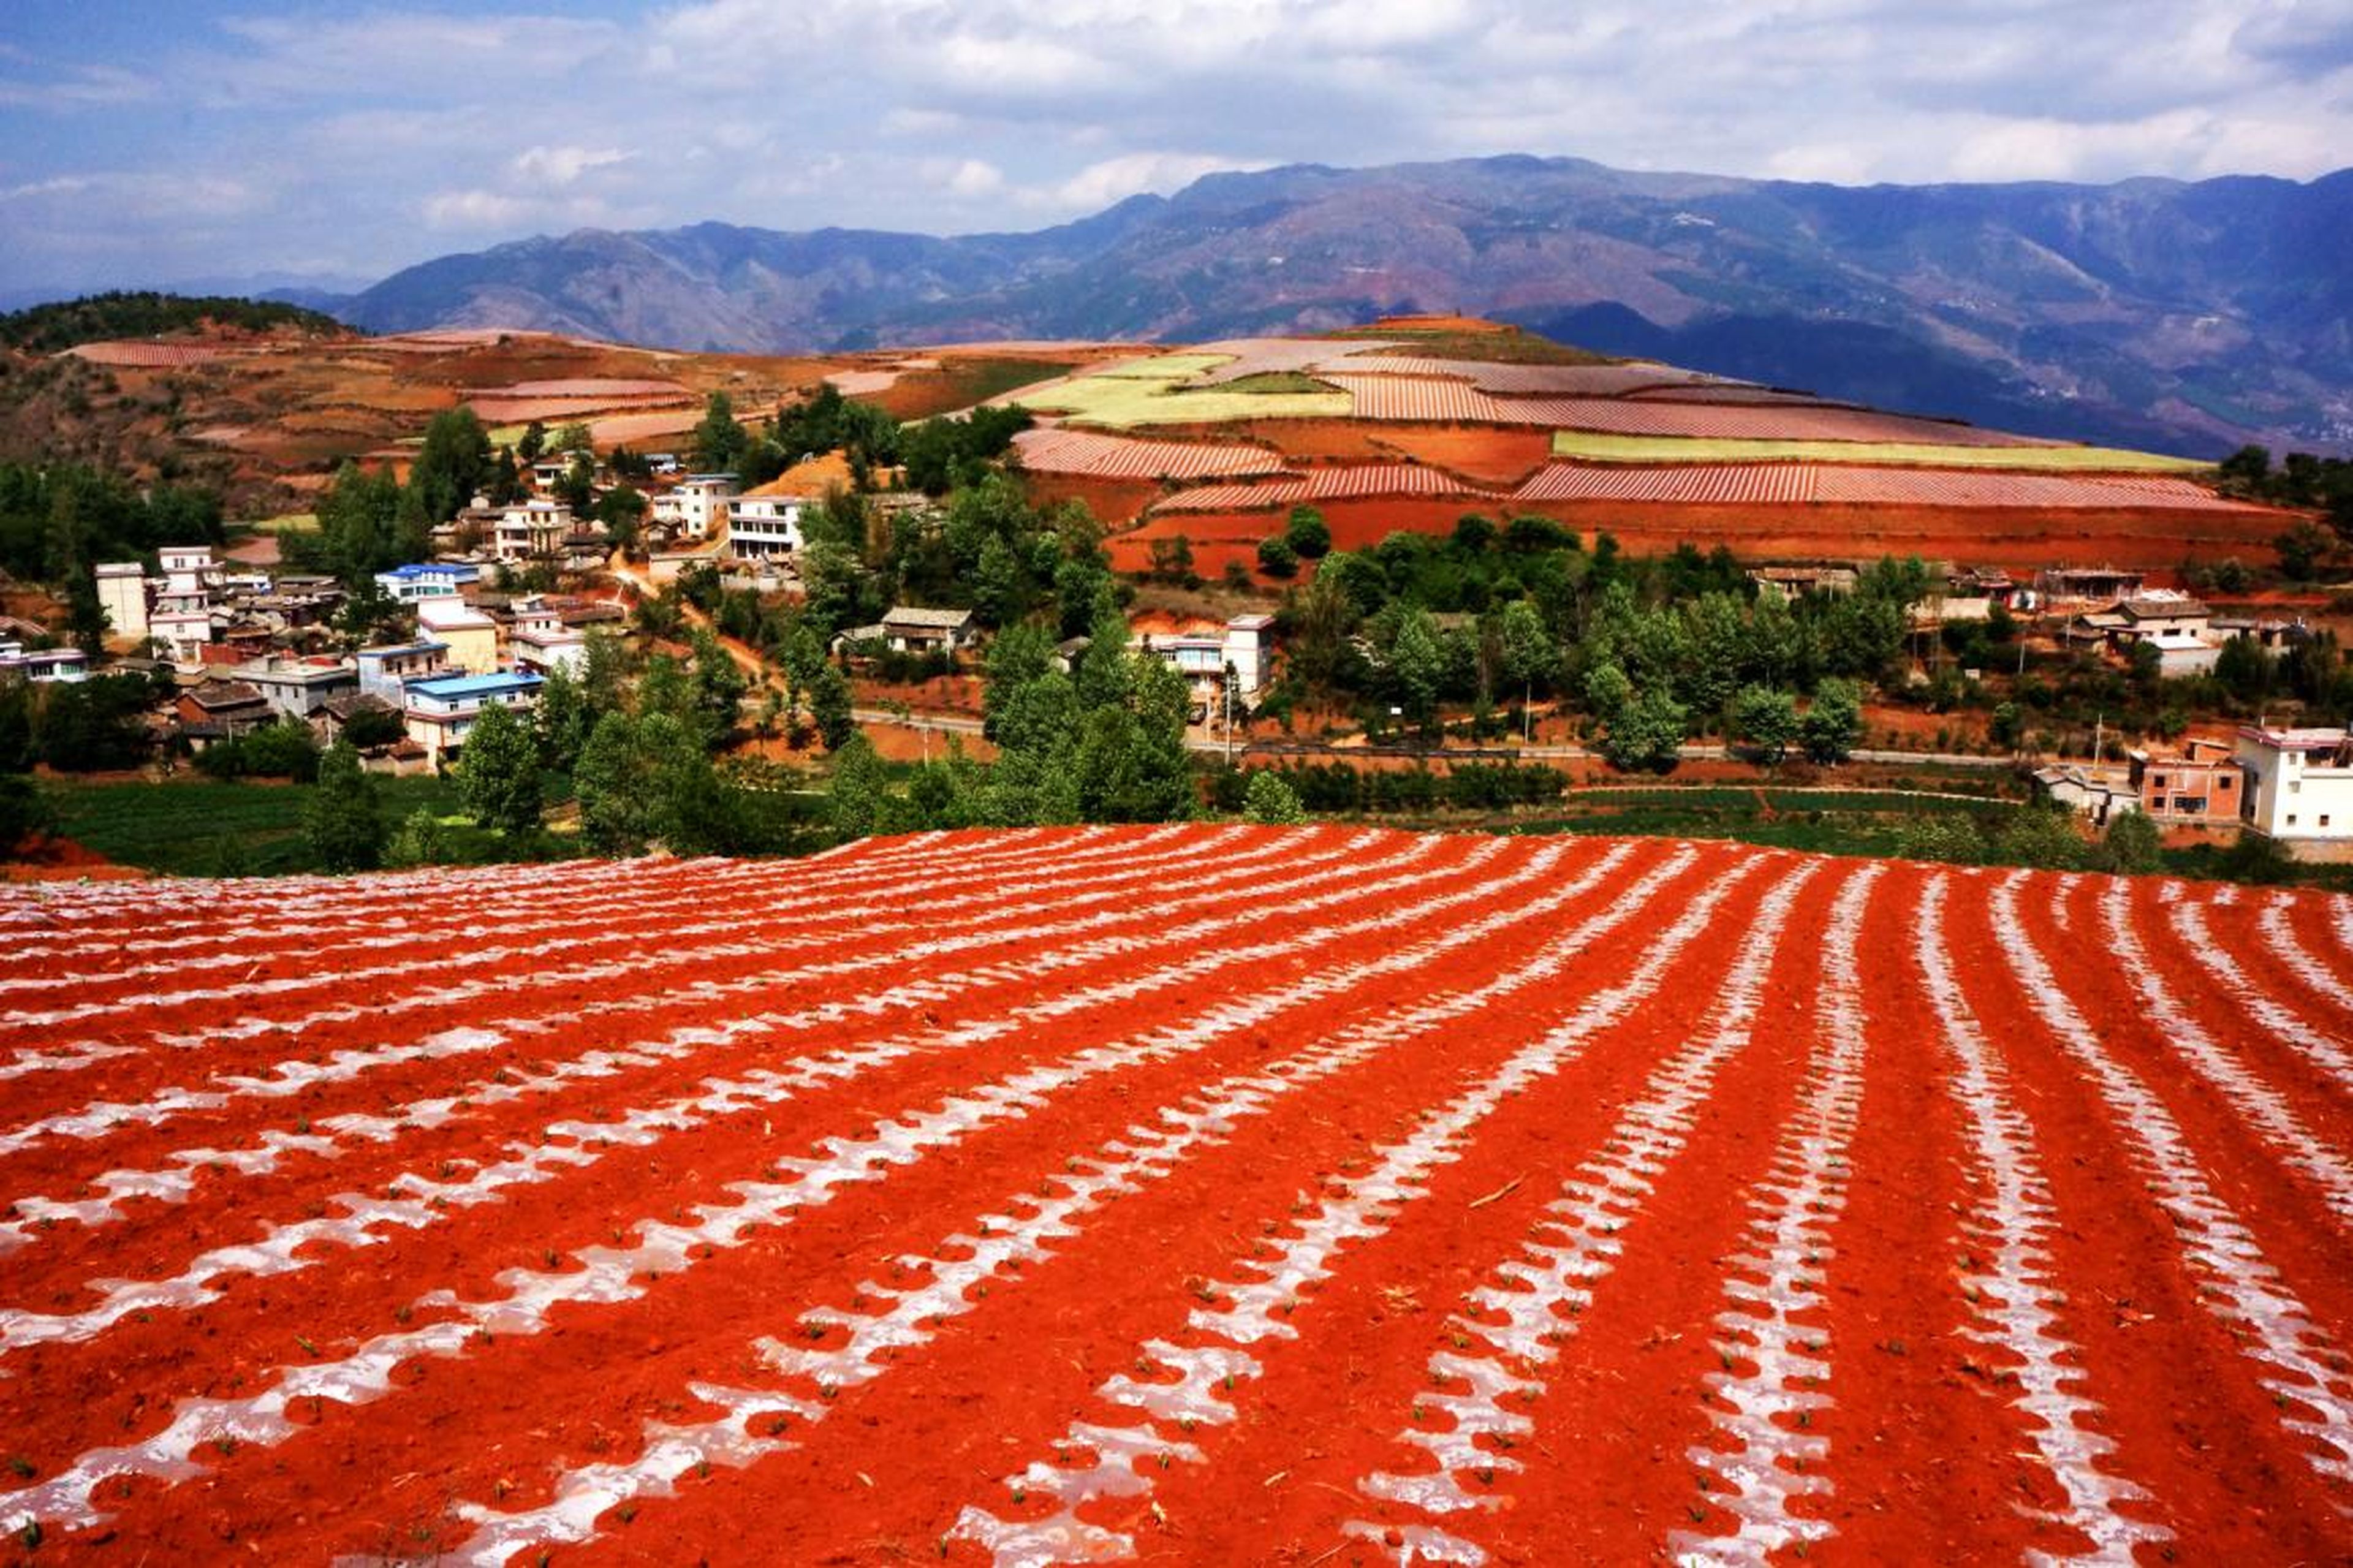 Los fotógrafos pueden capturar imágenes increíbles en la Tierra Roja de Dongchuan.